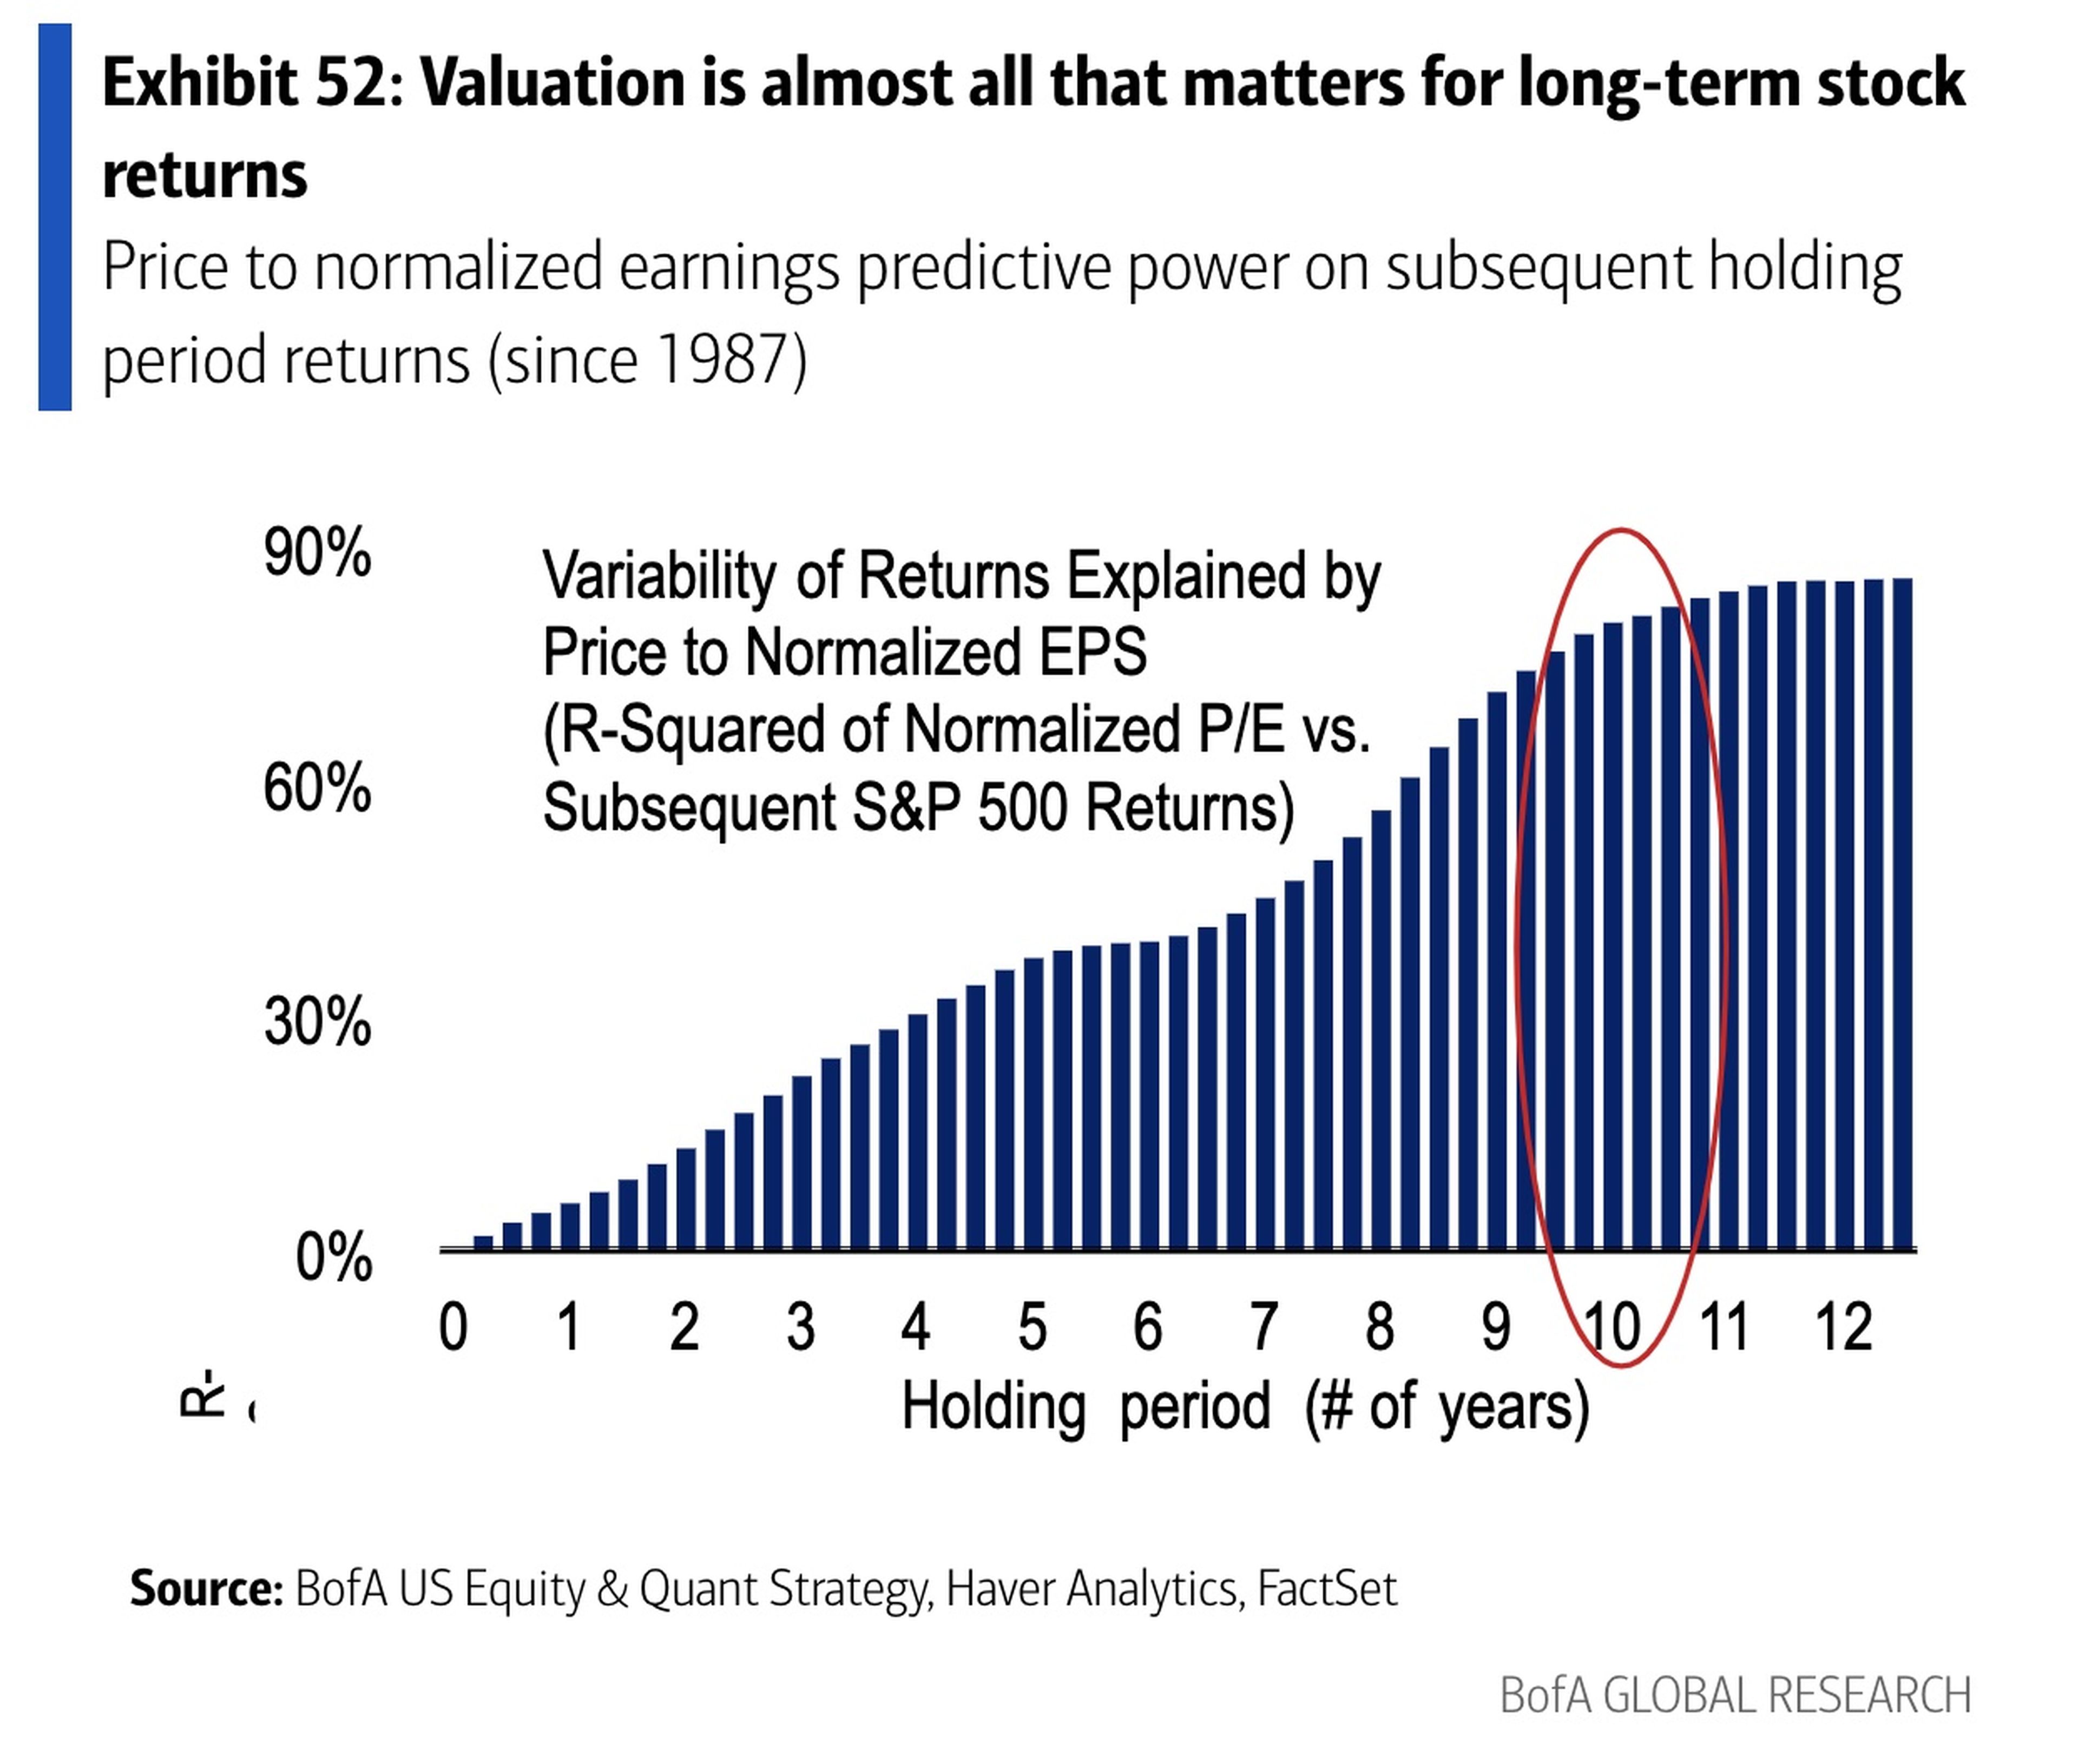 El poder explicativo de las valoraciones sobre los rendimientos aumenta en plazos de tiempo más largos.